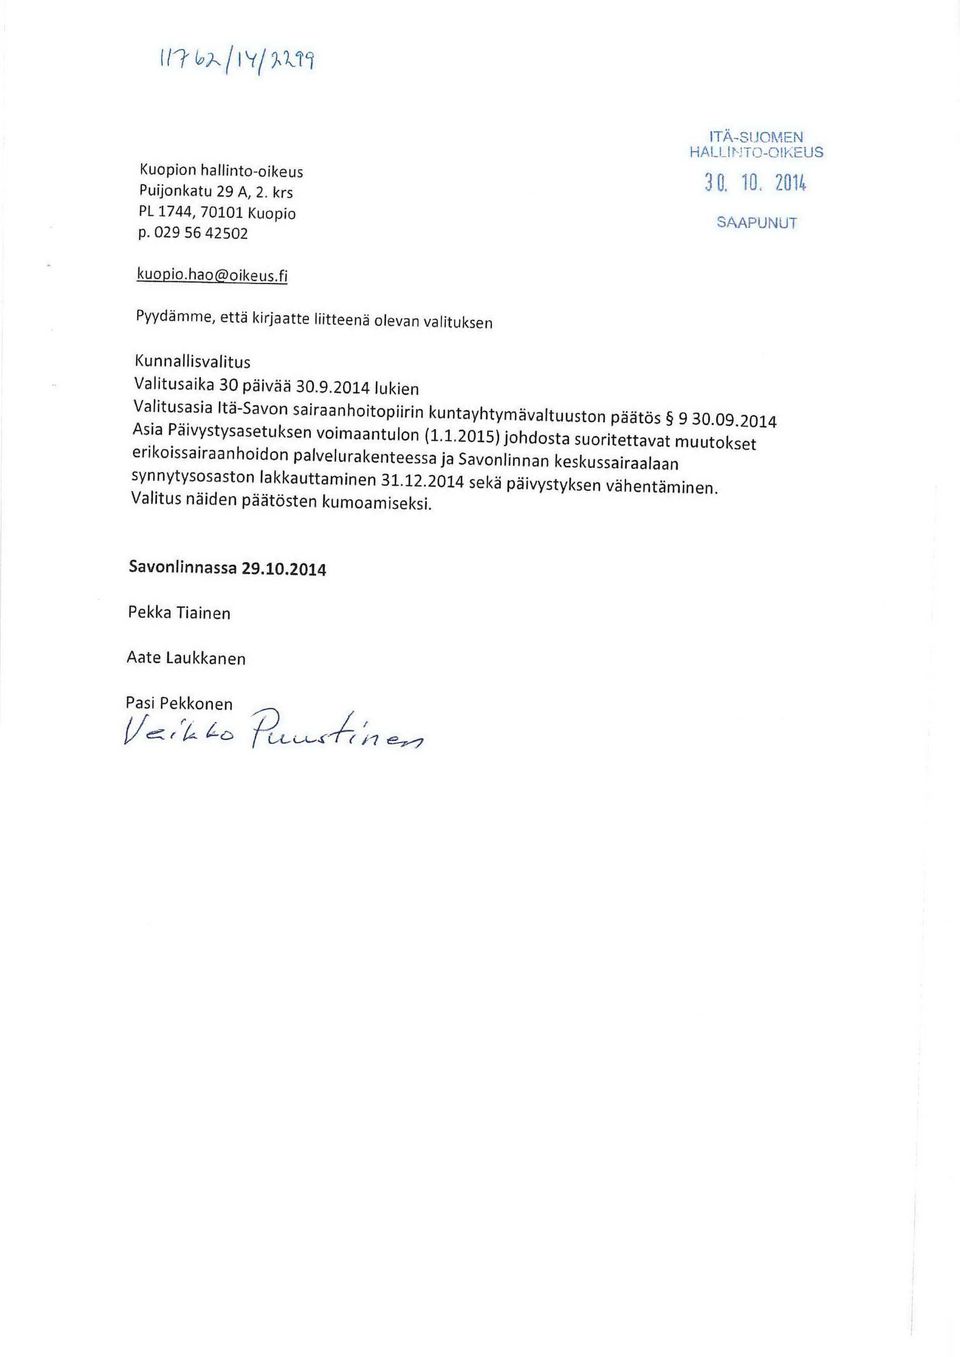 2014 lukien Valitusasia Itä-Savon sairaanhoitopiirin kuntayhtymävaltuuston päätös 9 30.09.2014 Asia Päivystysasetuksen voimaantulon (1.1.2015) johdosta suoritettavat muutokset erikoissairaanhoidon palvelu rakenteessa ja Savonlinnan keskussairaalaan synnytysosaston lakkauttaminen 31.